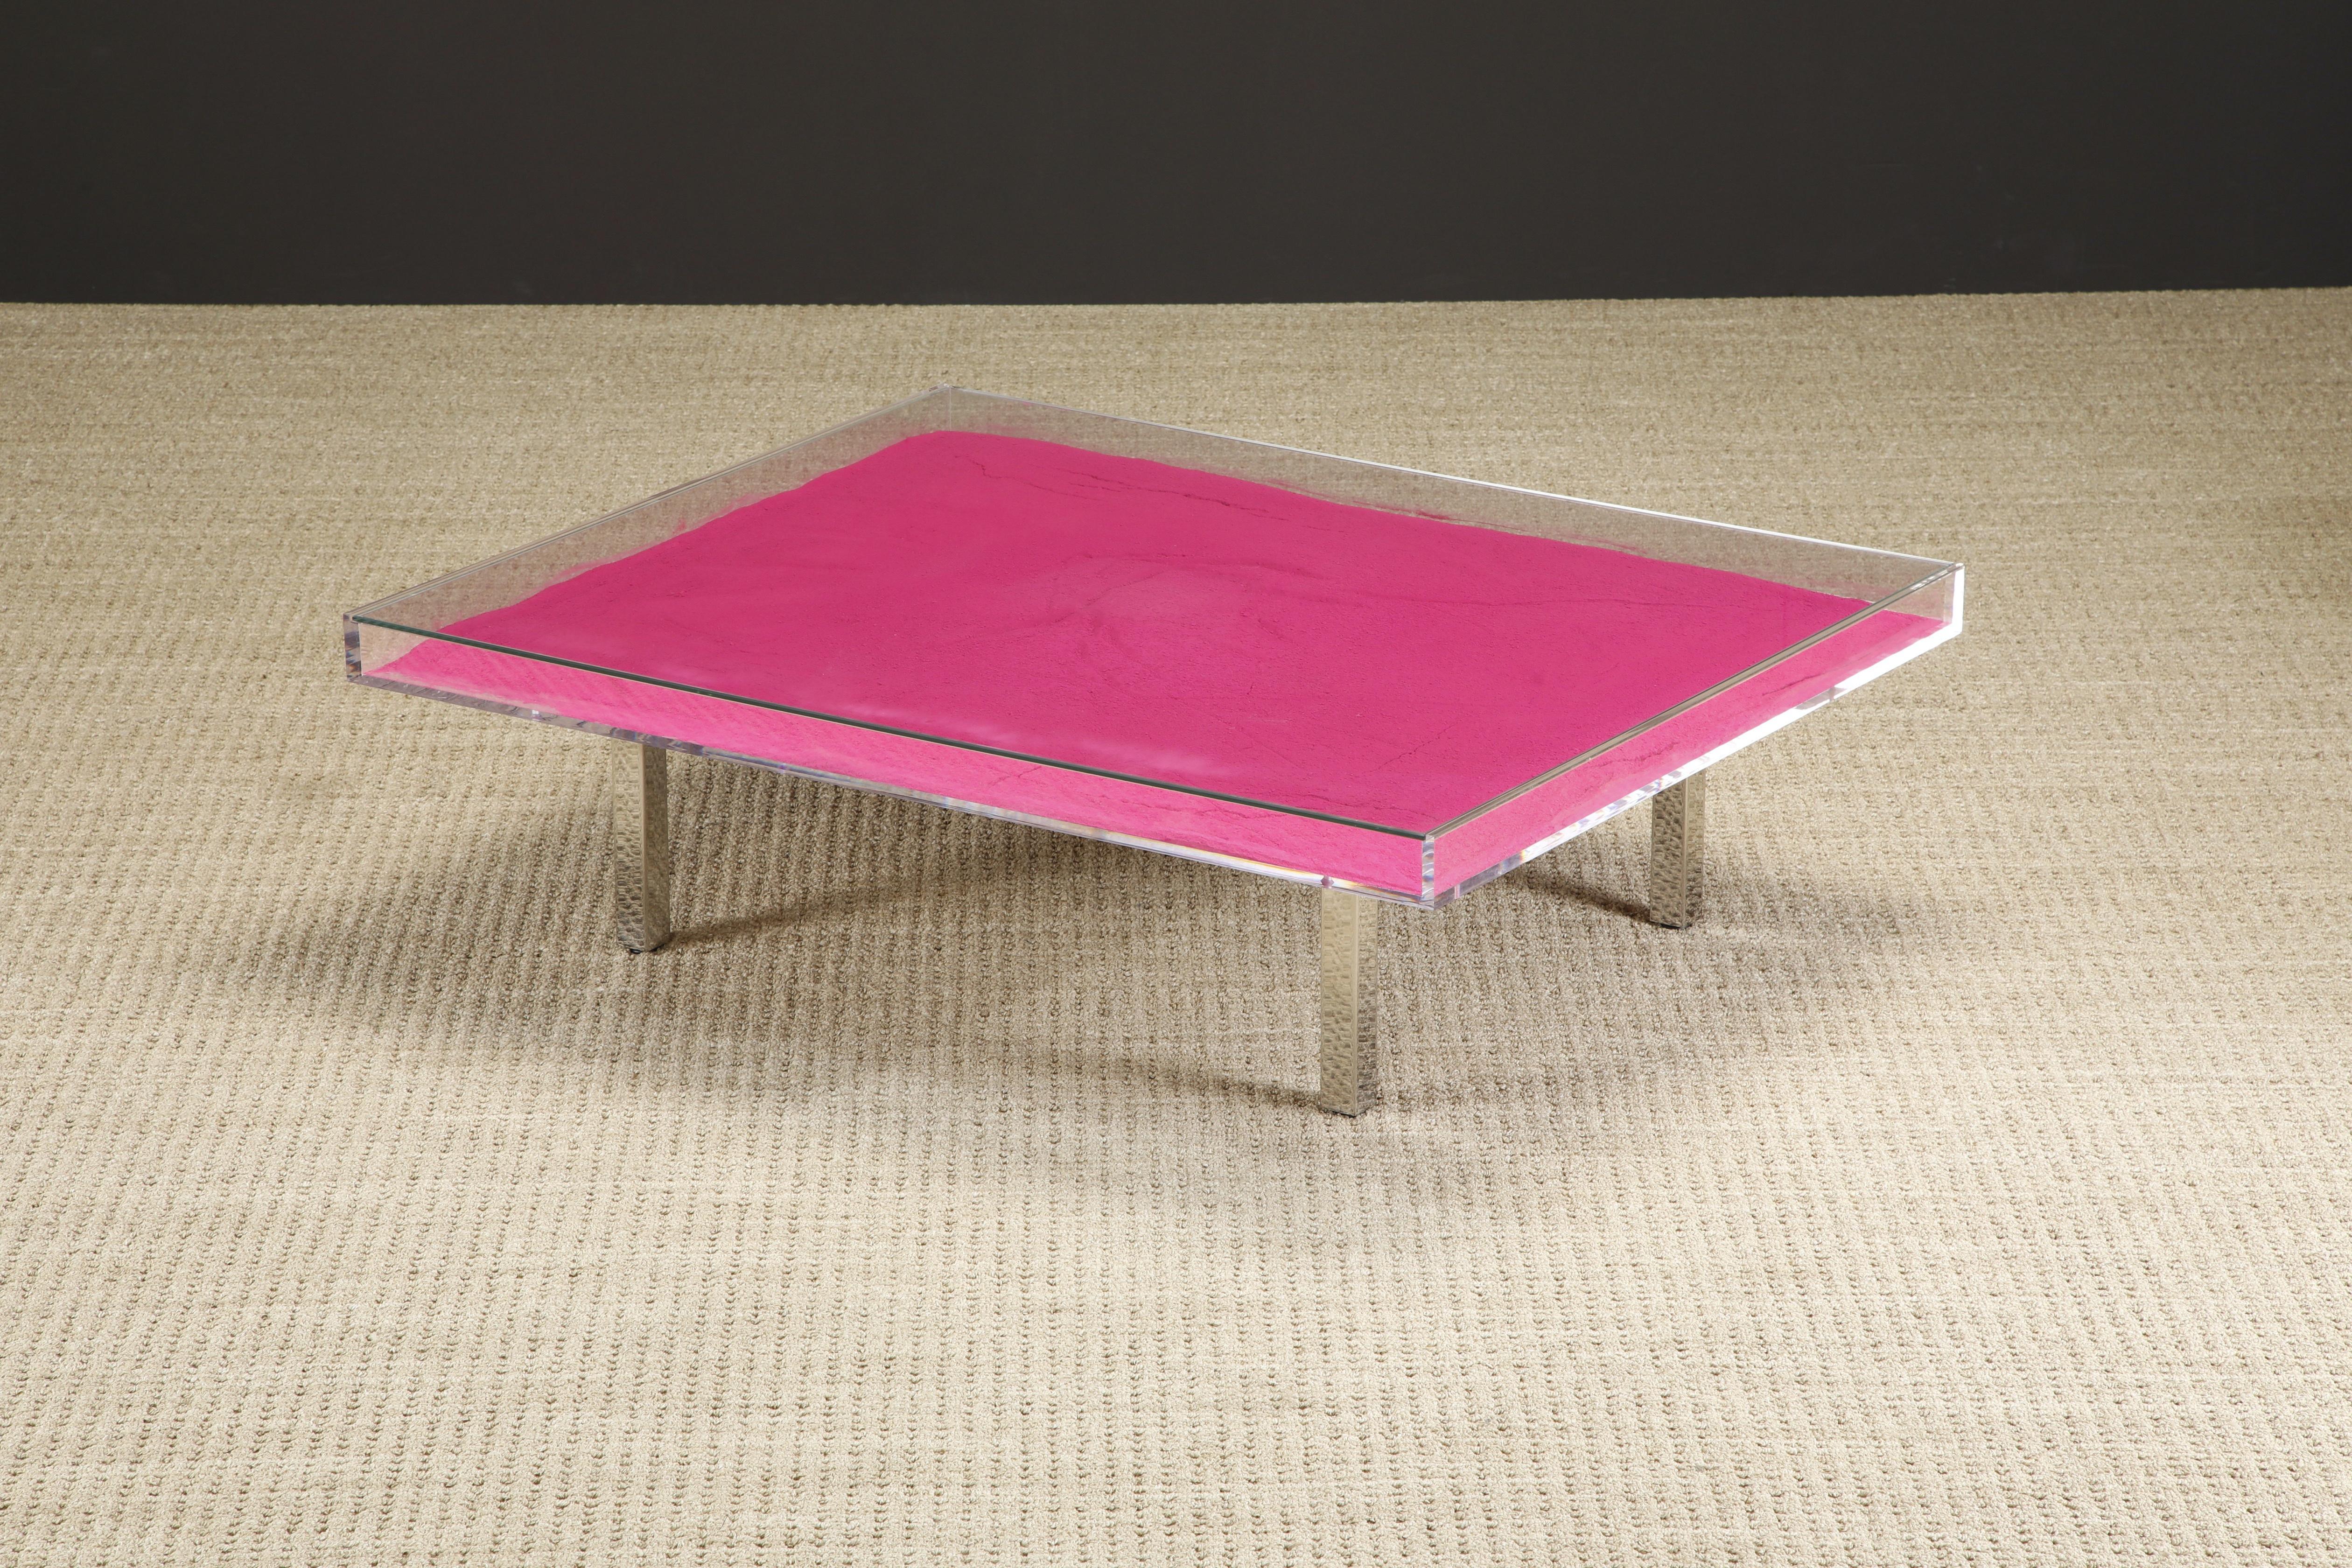 Verre Table de cocktail en pigments roses 'Monopink' de Yves Klein, 1961 / 1963, signée 